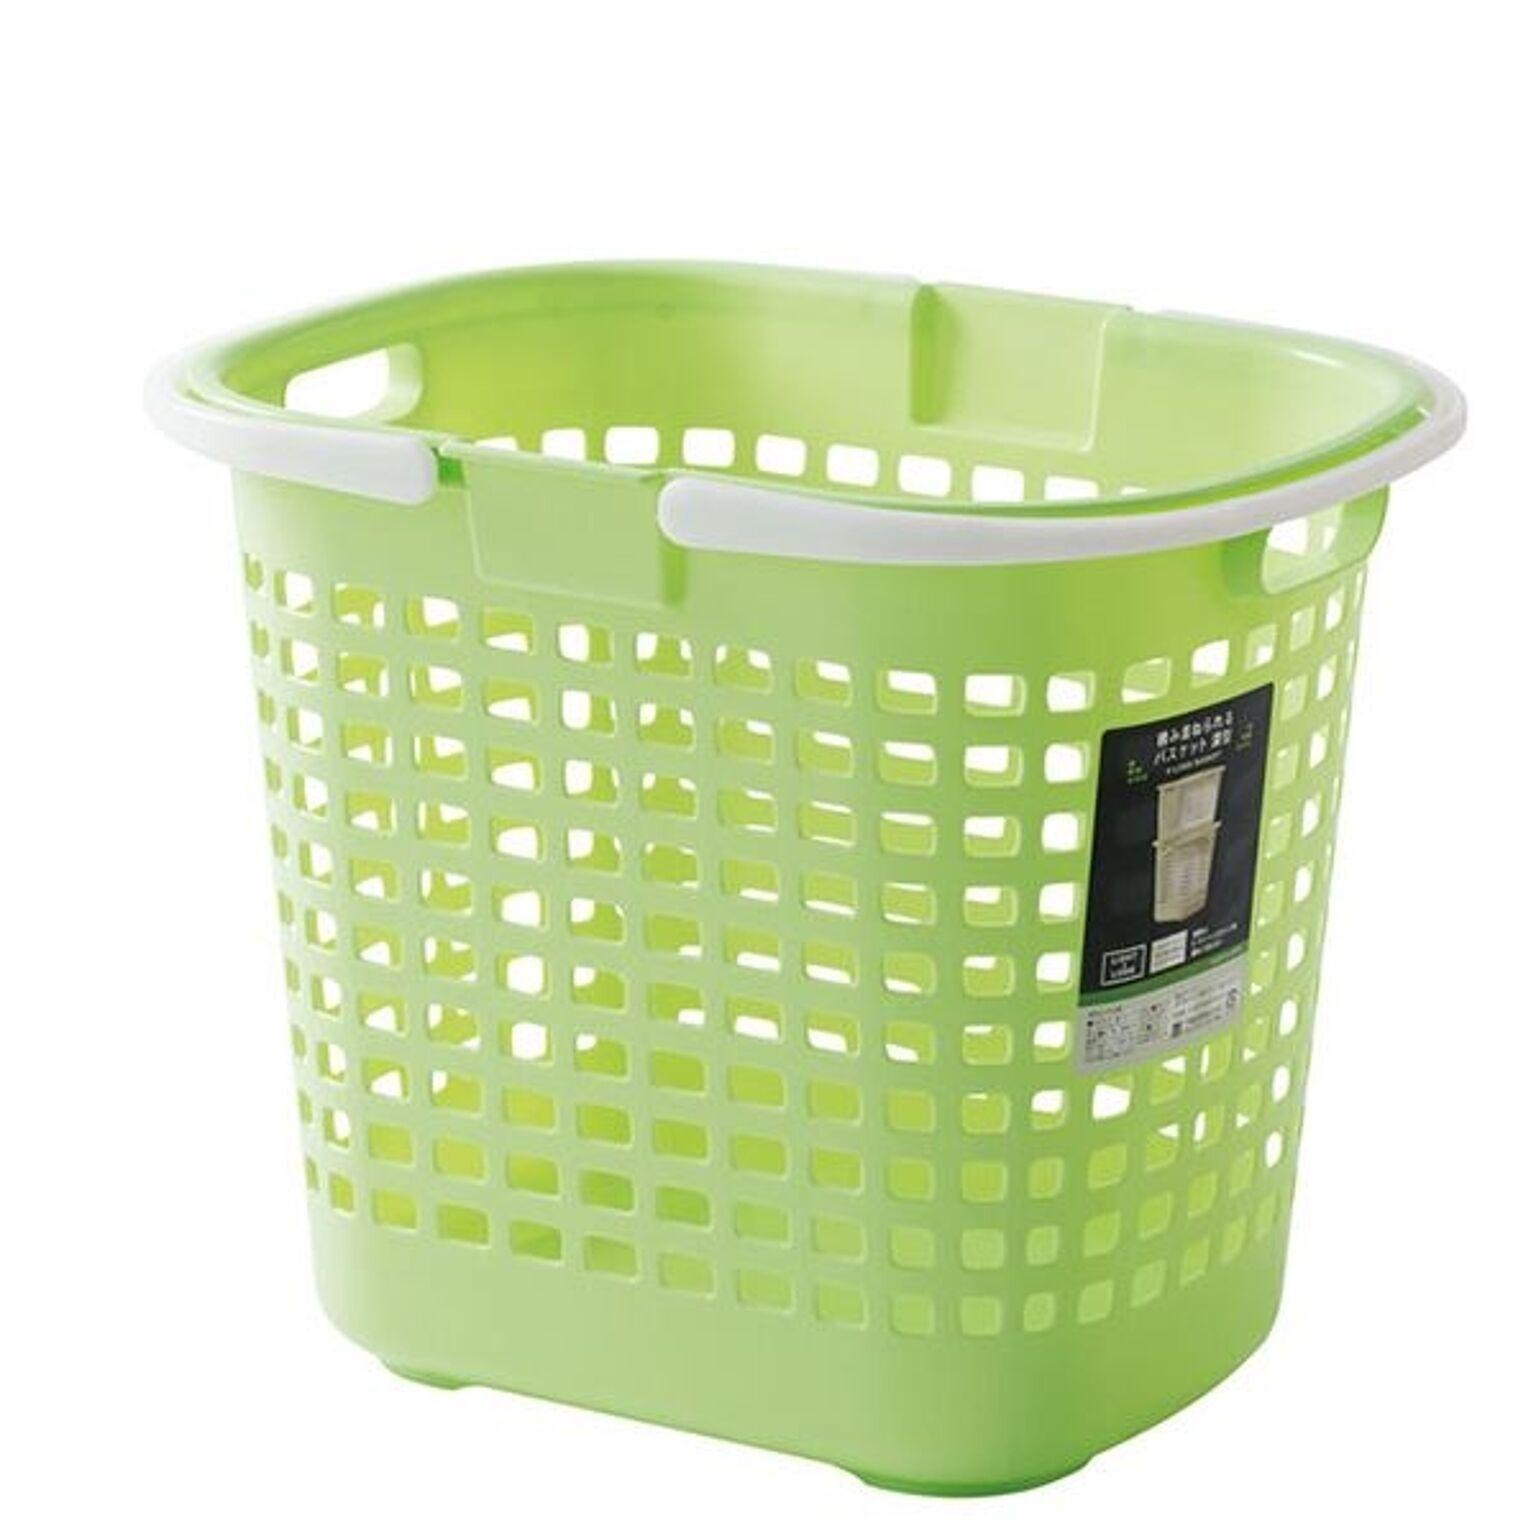 ランドリーバスケット 洗濯かご 幅34.6cm グリーン 3個組 深型 持ち手付き S-ロングバスケット 脱衣所 洗面所 おもちゃ 雑貨